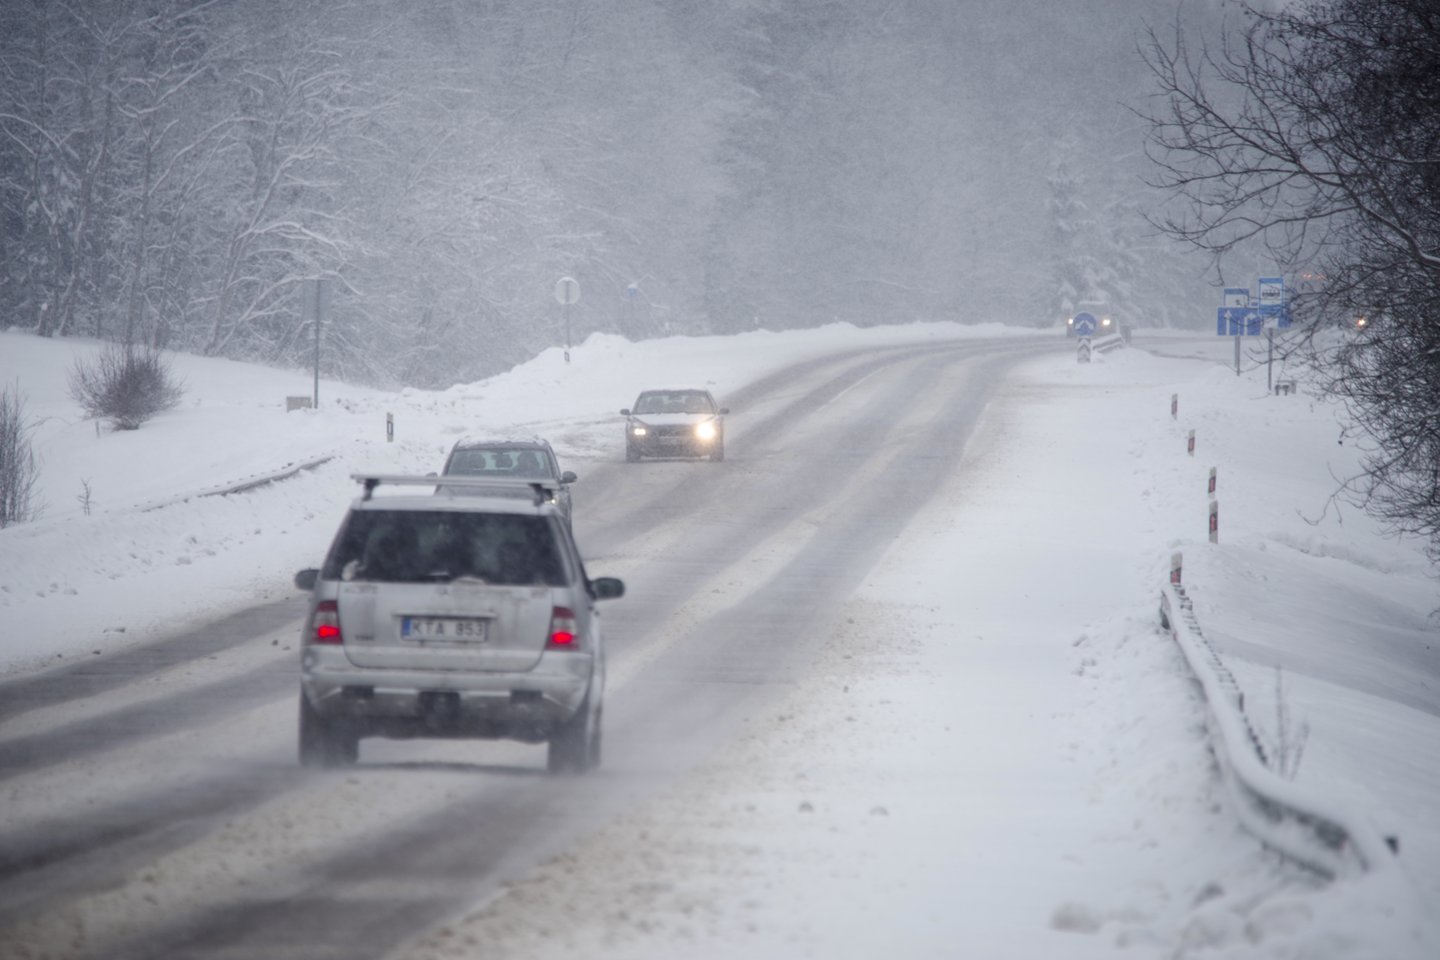 Gausiau iškrentantis sniegas ir žema temperatūra, vairuotojus ragina būti atsargesniais kelyje, rinktis saugų greitį bei laikytis didesnio nei įprasta saugaus atstumo.<br>V.Ščiavinsko nuotr.